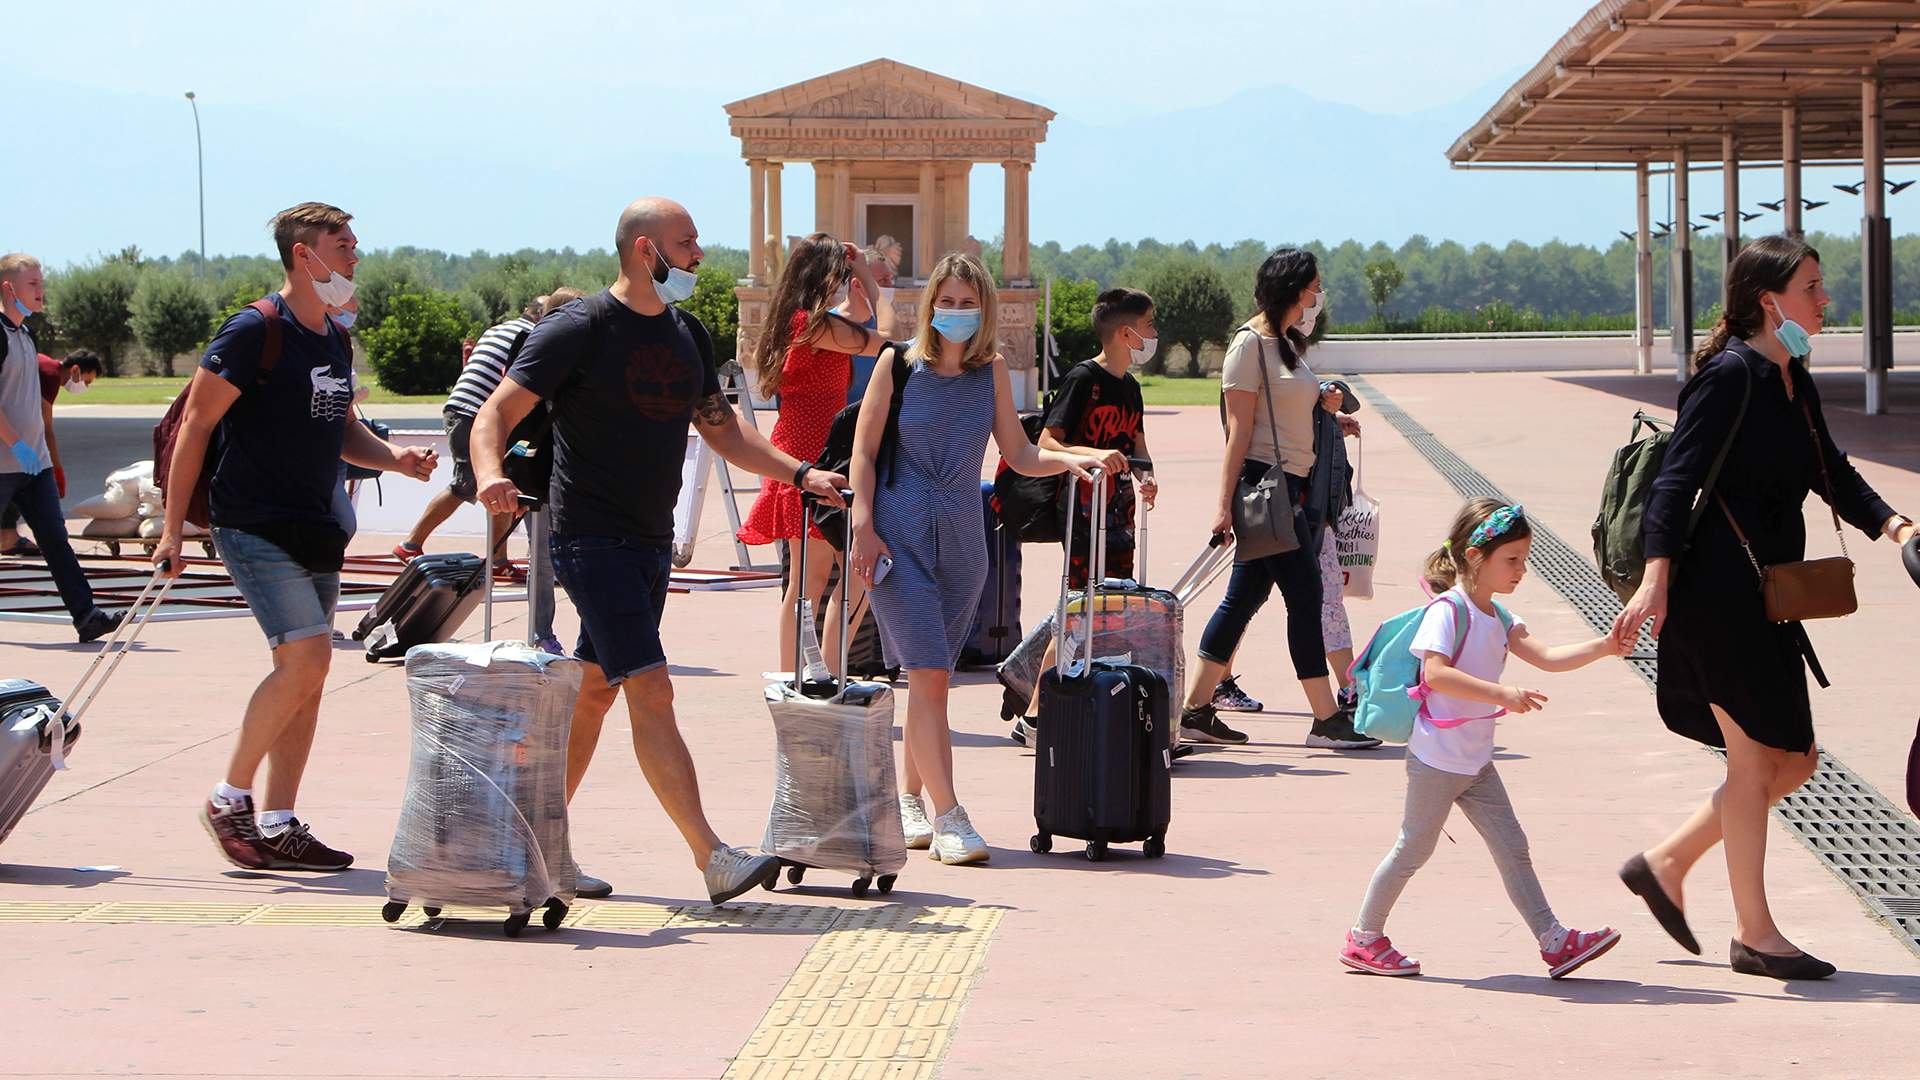 12 июня отпуск. Туристы в Турции. Русские туристы в Турции. Туристы на экскурсии. Летний туризм.